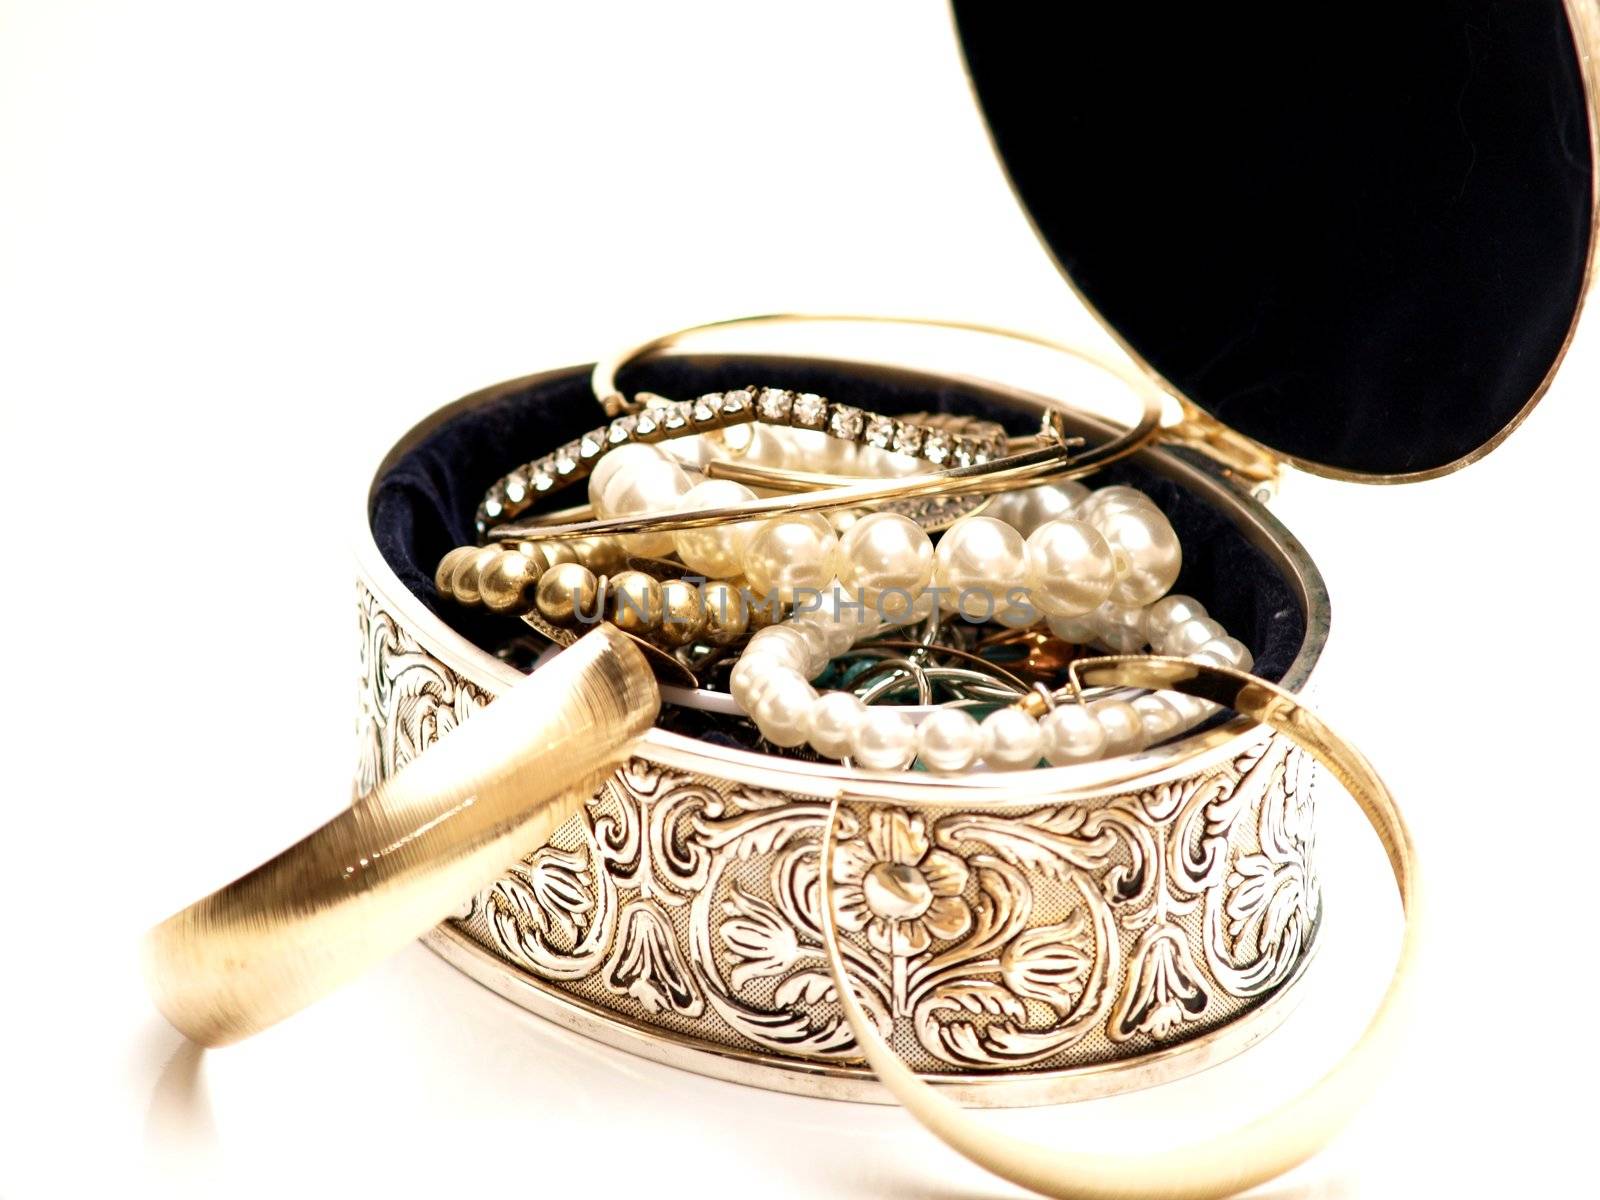 Pearls and earrings by Arvebettum